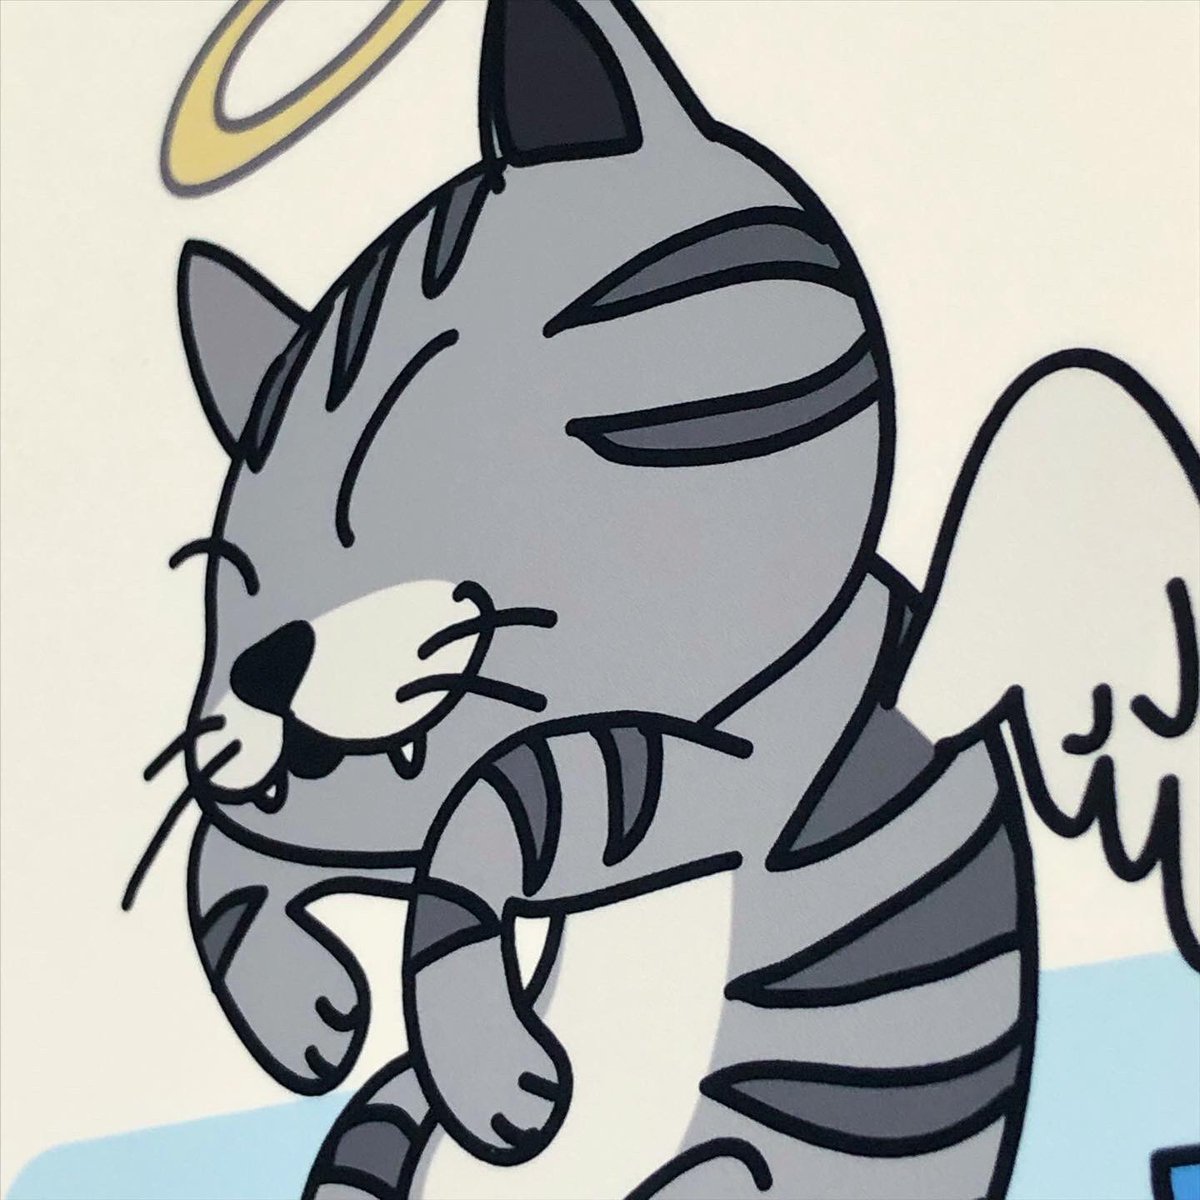 「ウチにはネコがいました」ポストカード作りました。

#ネコトモ展 

明日まで! 